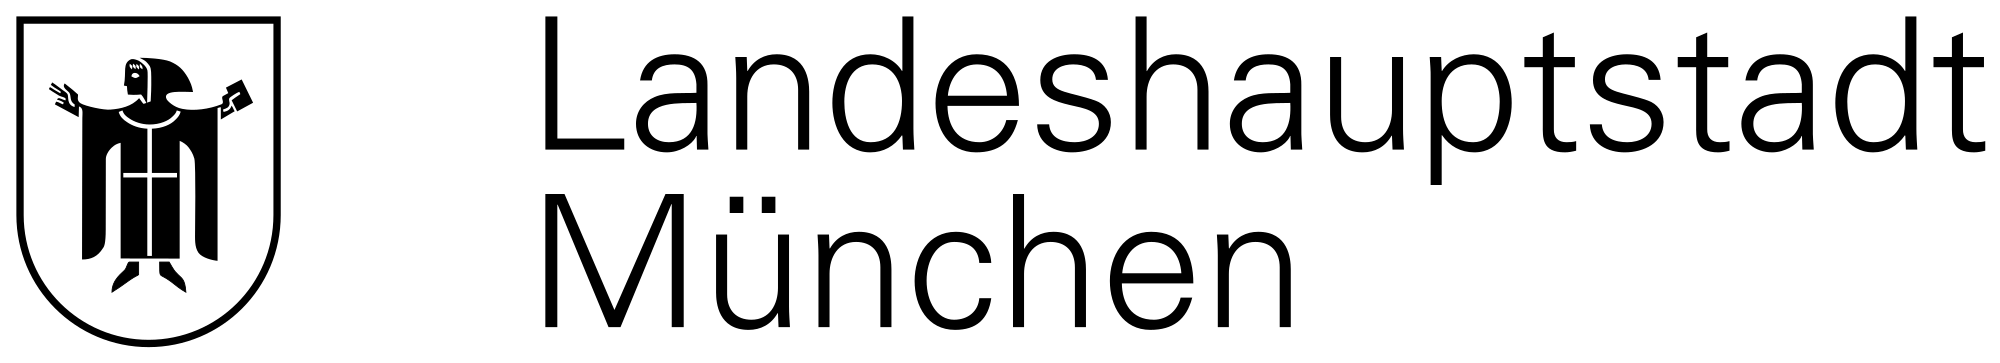 München Logo svg